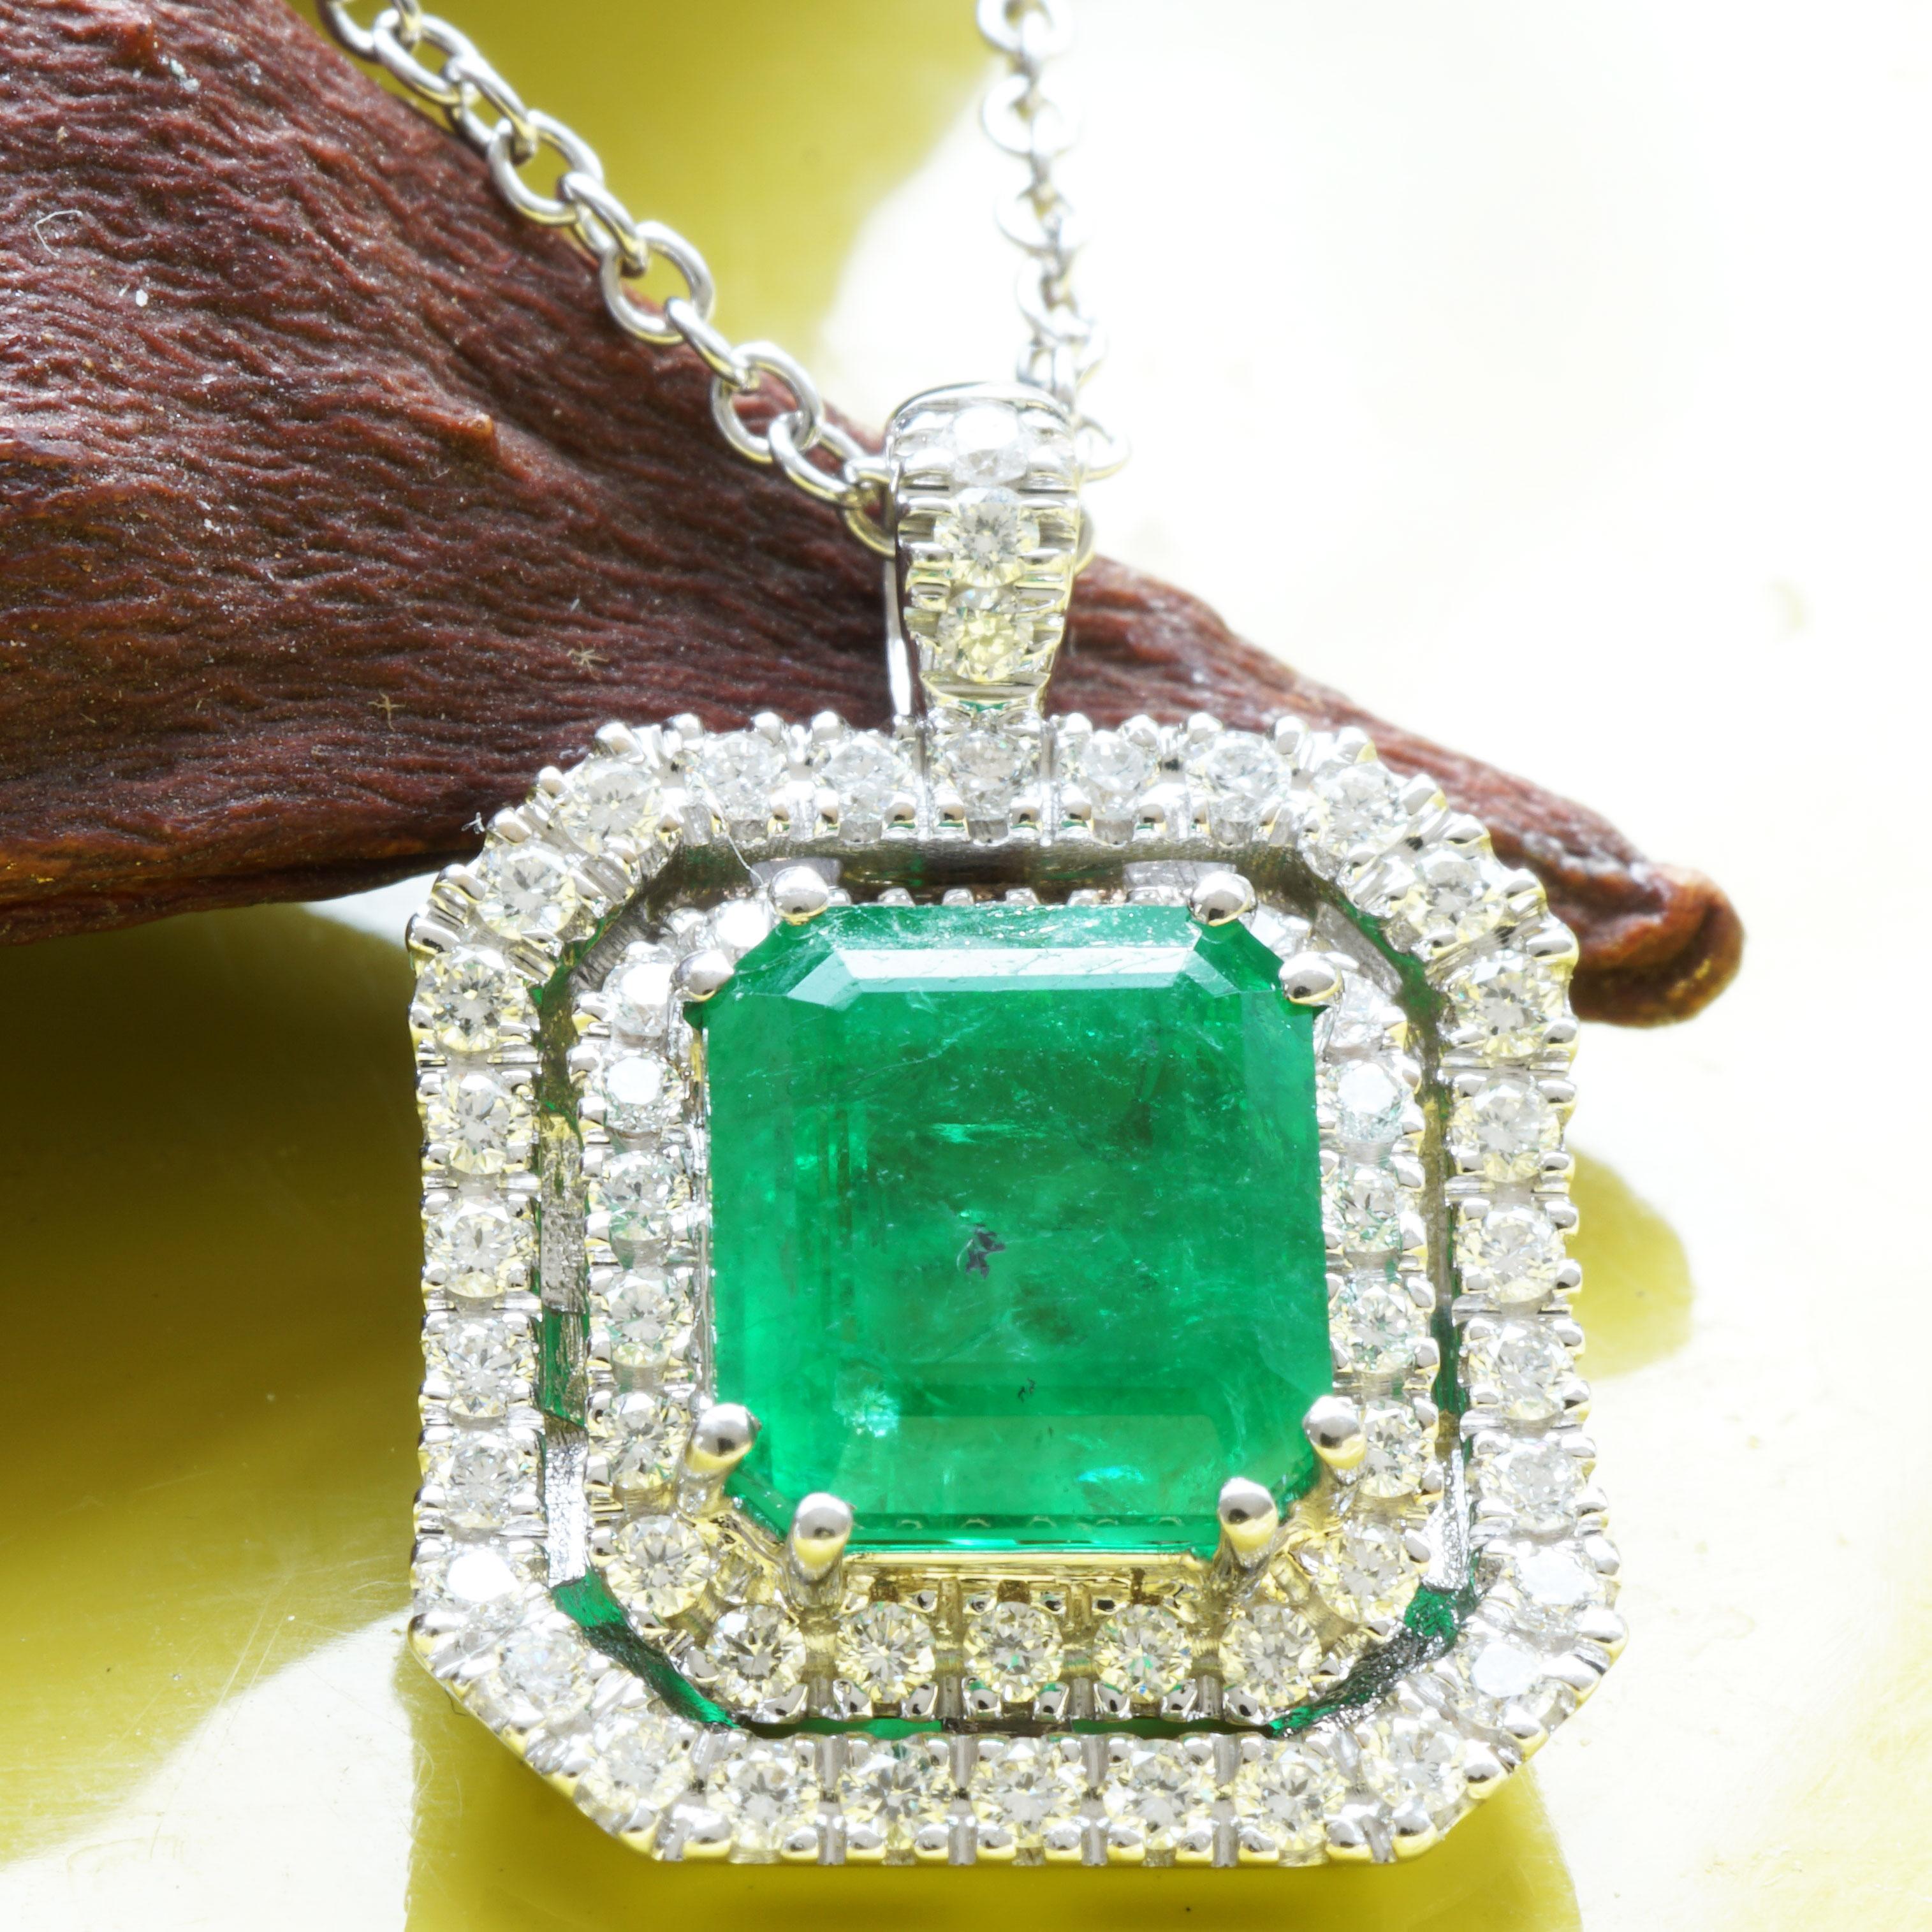 Schätzwert ca. 9.550,-- Euro

echte Smaragde machen glücklich, hier ein edler Anhänger verziert mit Diamanten im Halo-Stil, ein feiner Smaragd (geölt) ca. 2,13 ct, intensive Farbqualität, AAA+, leichte natürliche Einschlüsse, Stufenschliff, 7,63 x